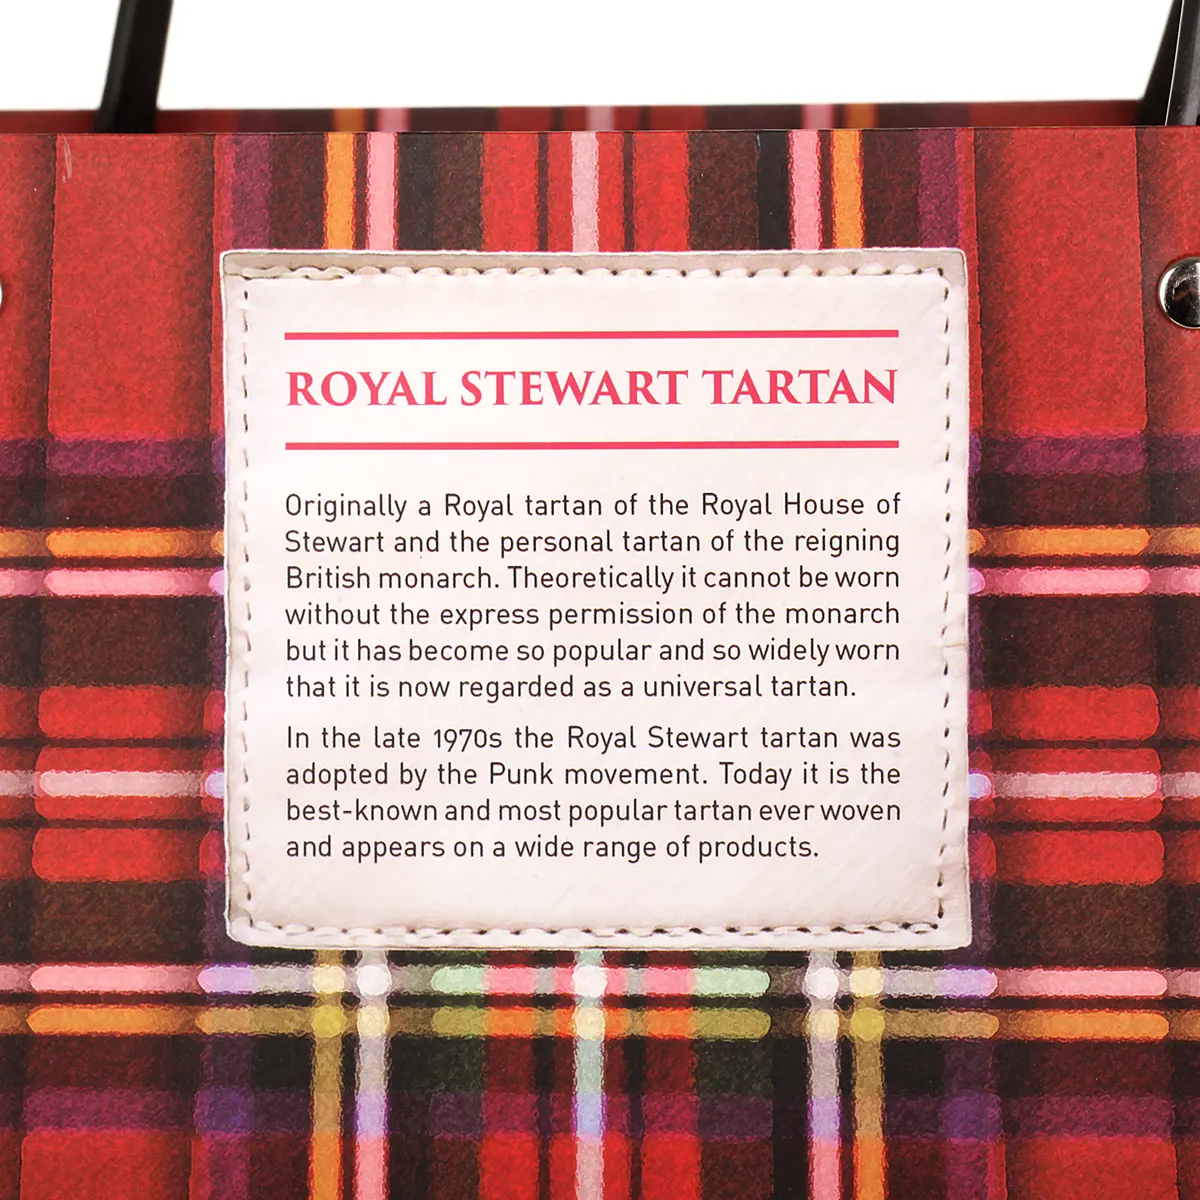 Royal Stewart Tartan Shopping Bag - schottischer Karomuster Einkauftasche aus Papier